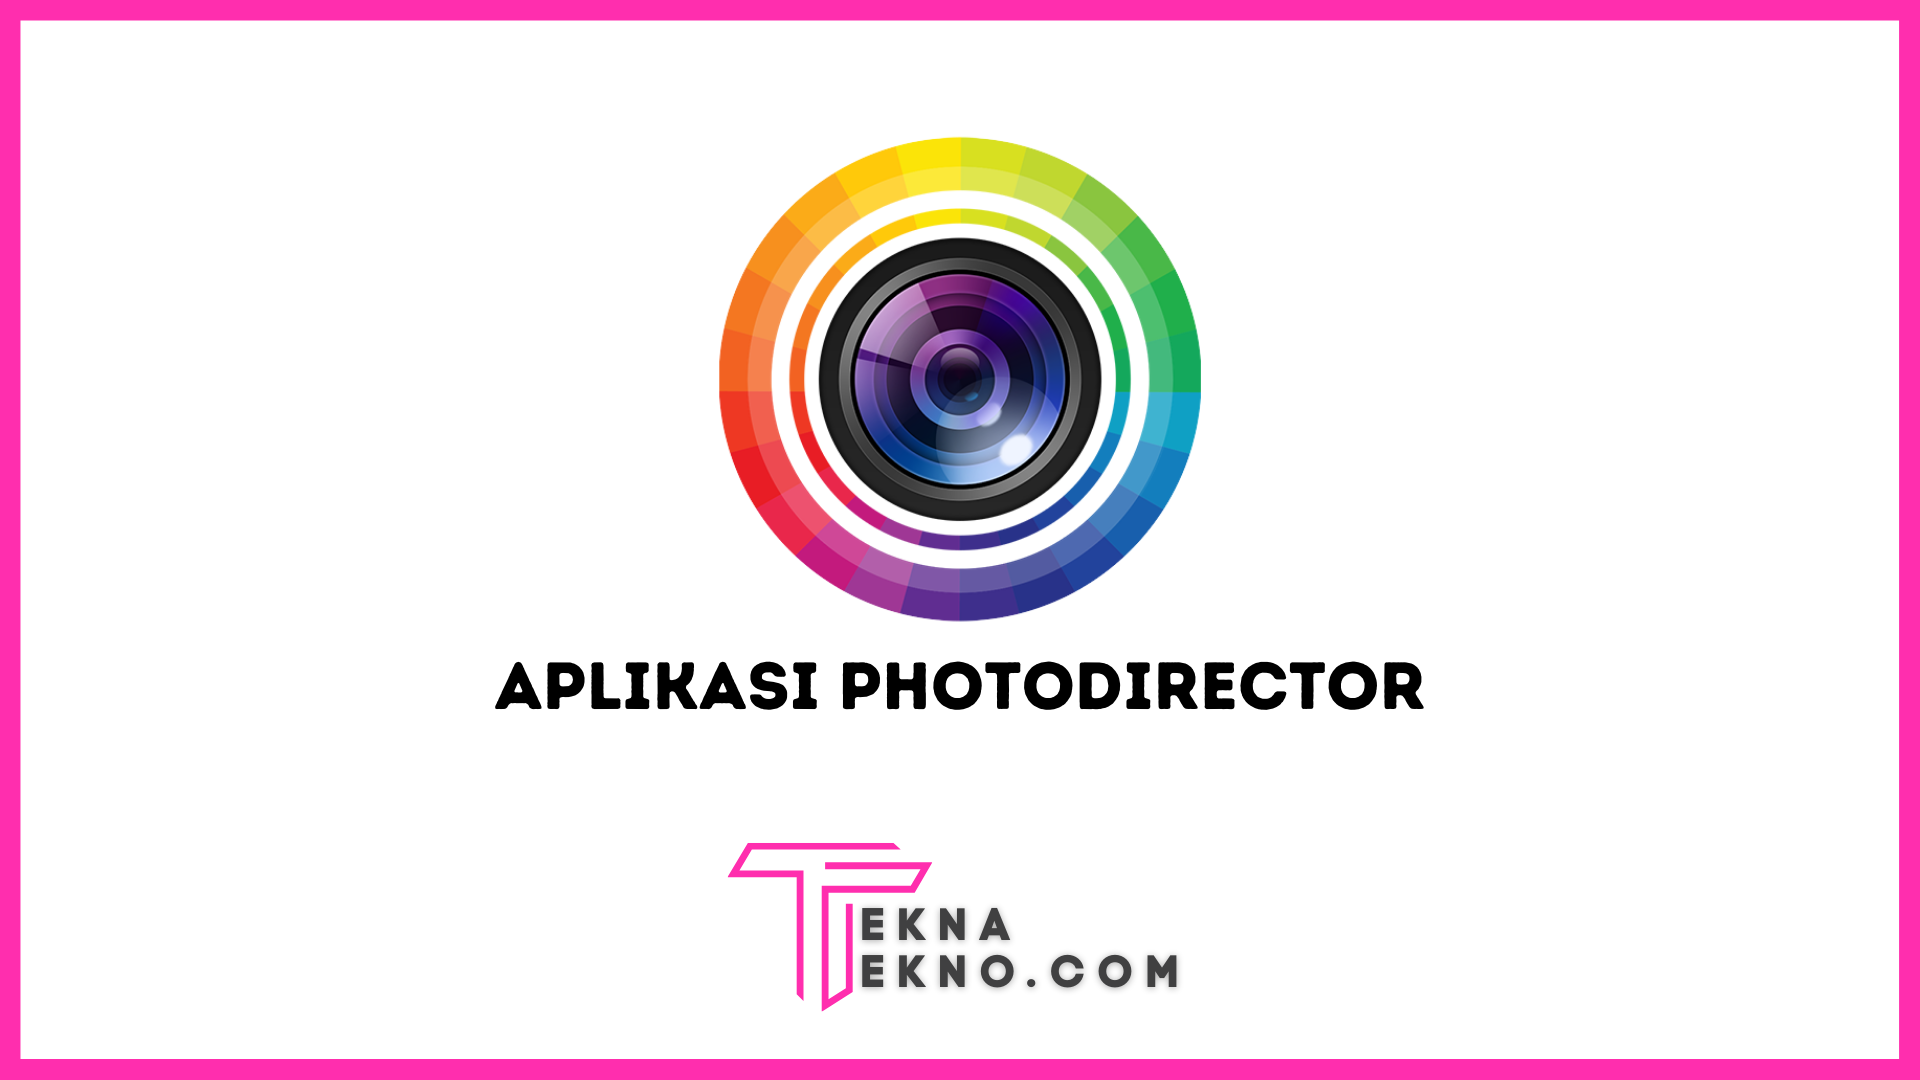 Aplikasi PhotoDirector Pengertian, Spesifikasi dan Fiturnya